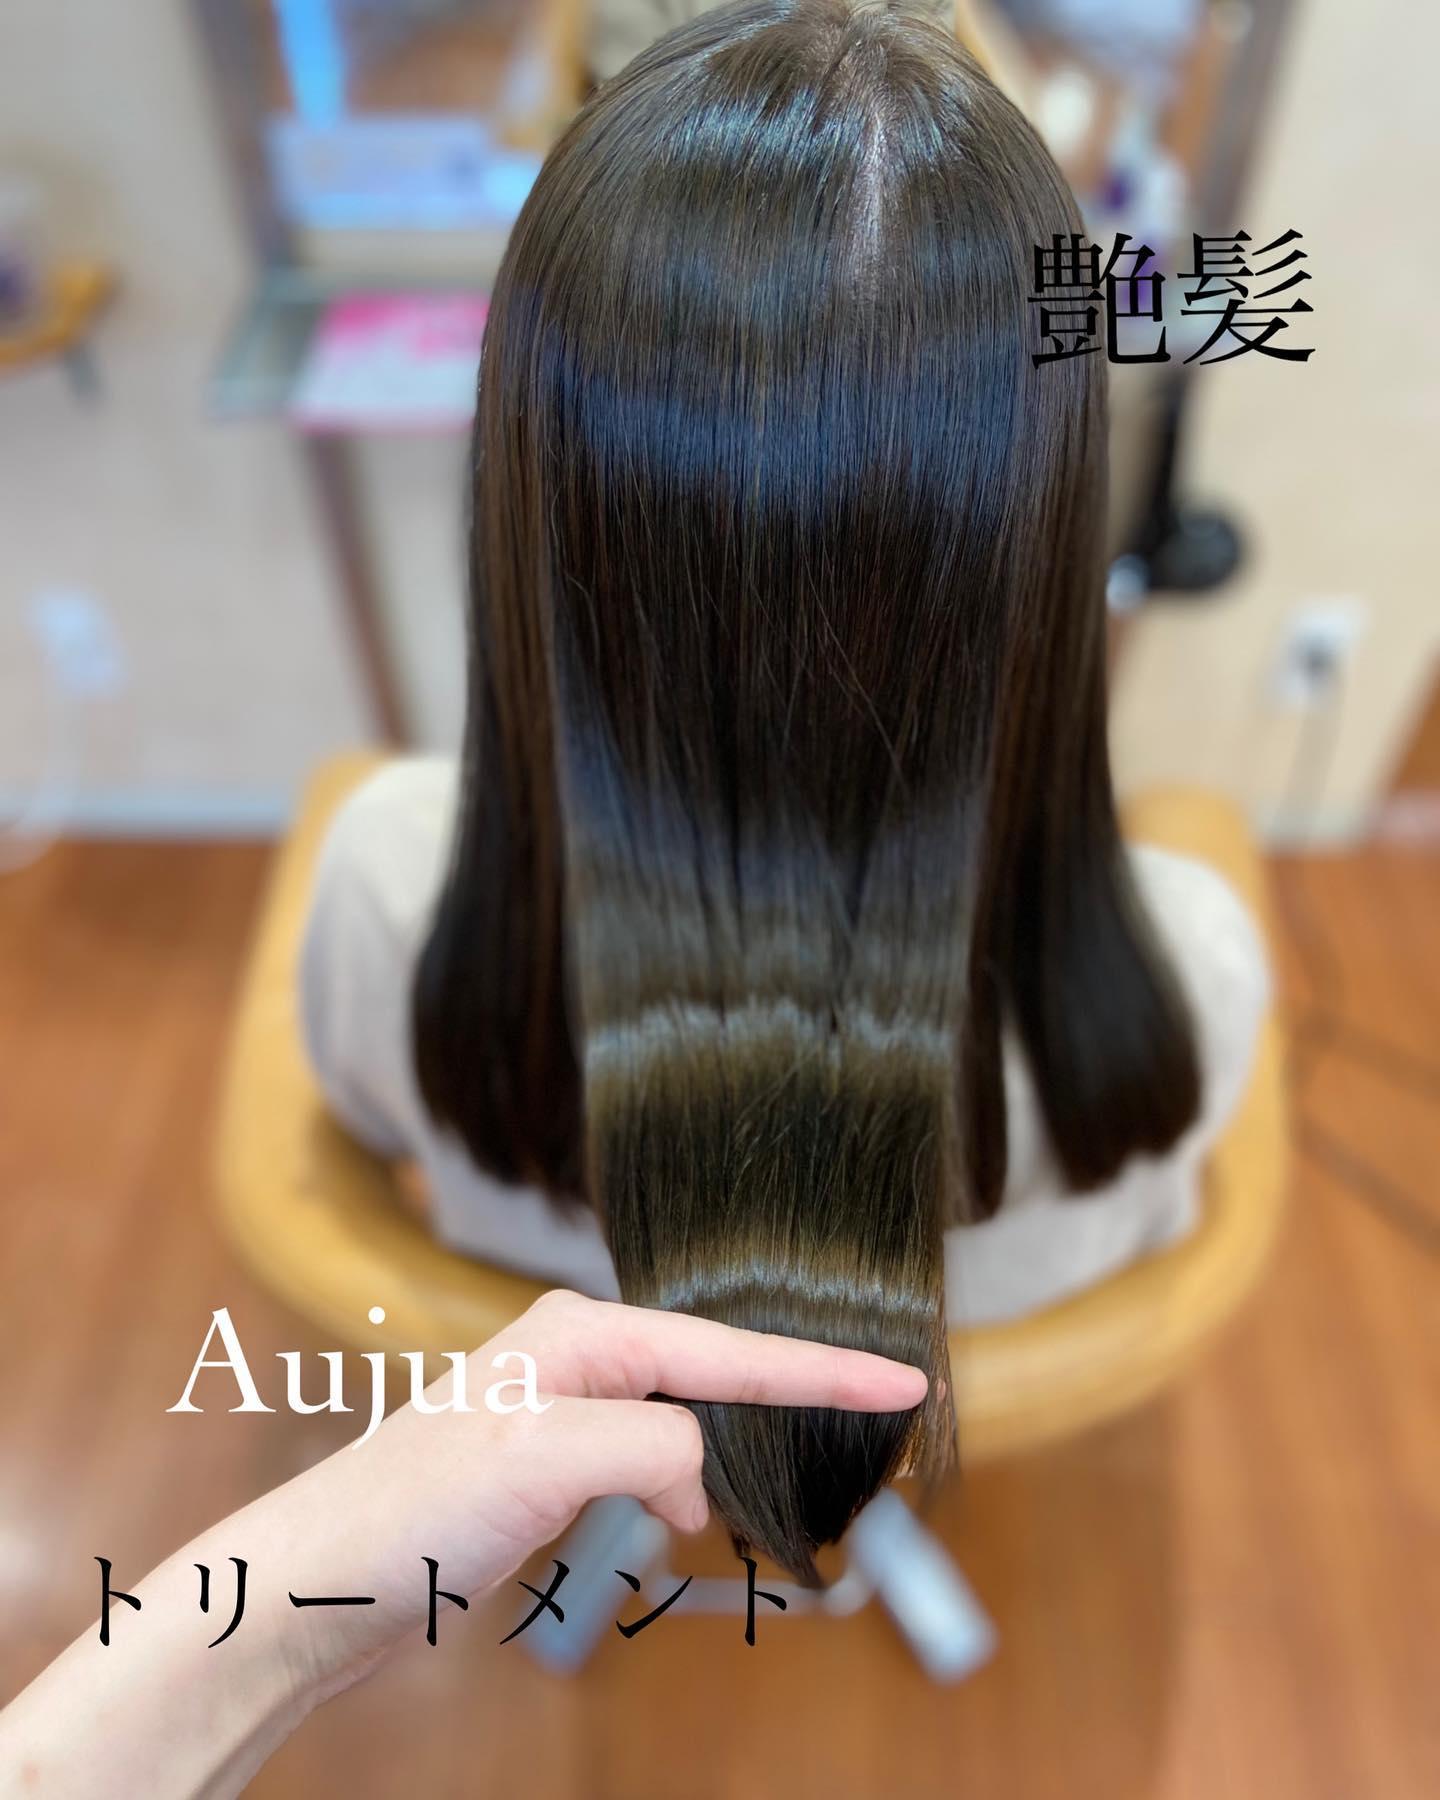 公式】ZABO hair design | 🌼大人気#aujuaトリートメント